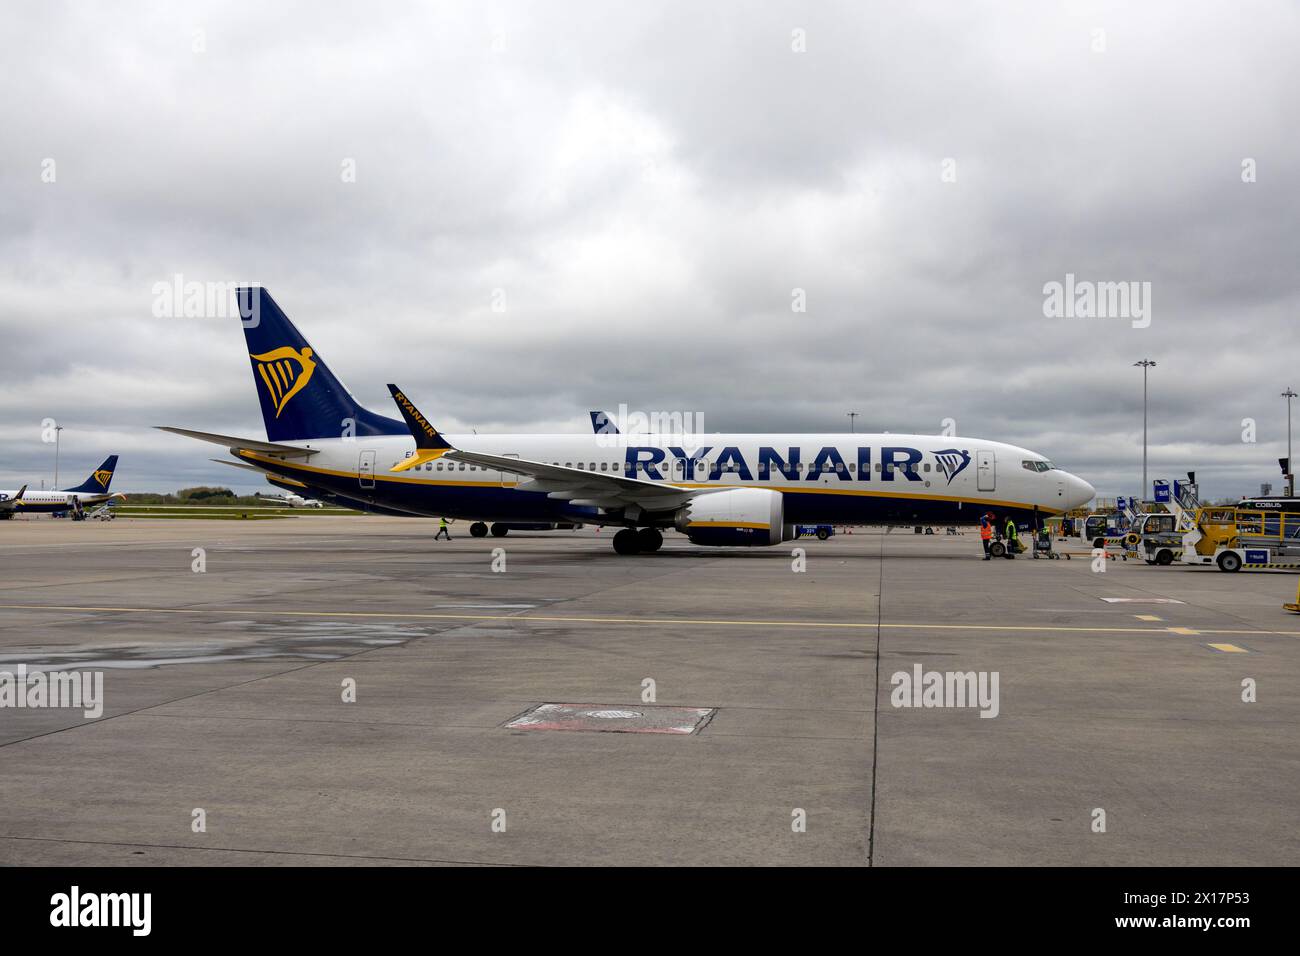 Aeromobili Ryanair pronti per la partenza all'aeroporto di Stansted. Foto Stock